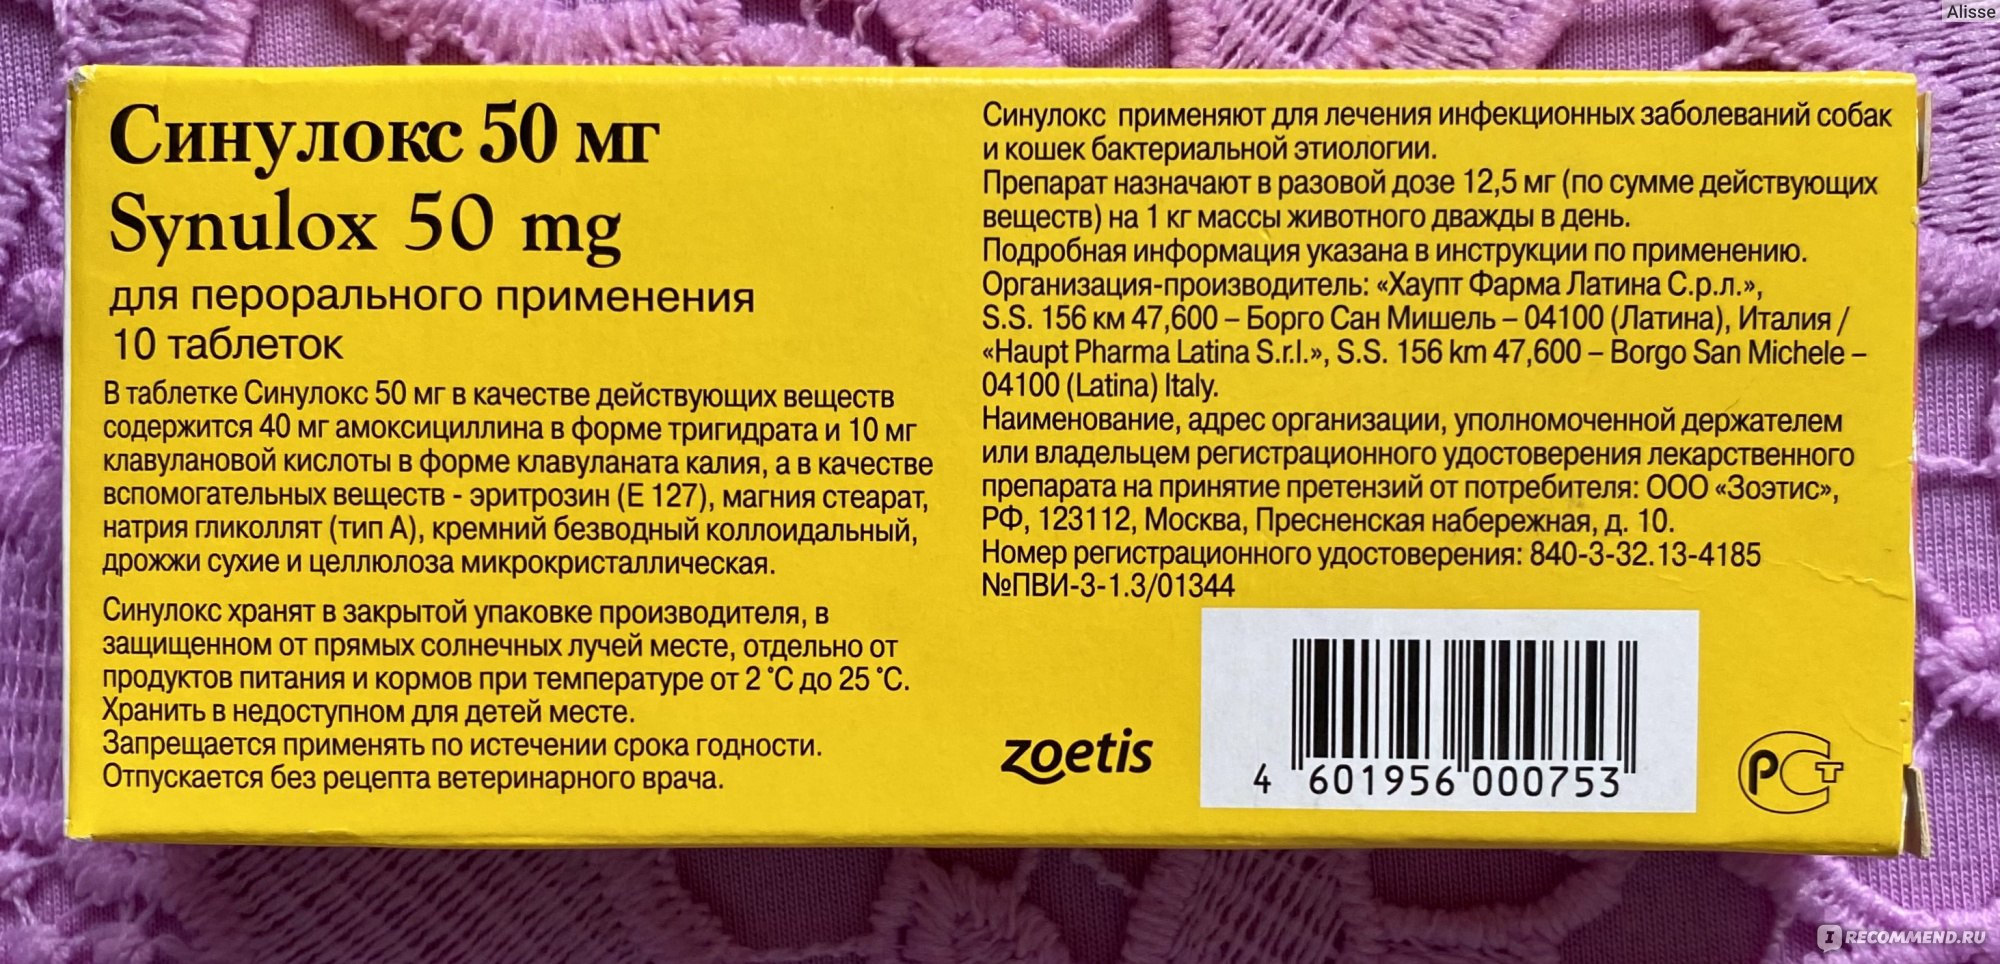 Антибактериальный препарат Zoetis Синулокс (Synulox) в таблетках - «Синулокс  отличный антибиотик, который помог нашим животным быстро выздороветь.  Хорошо проявил себя как после стерилизации так и при аллергии» | отзывы